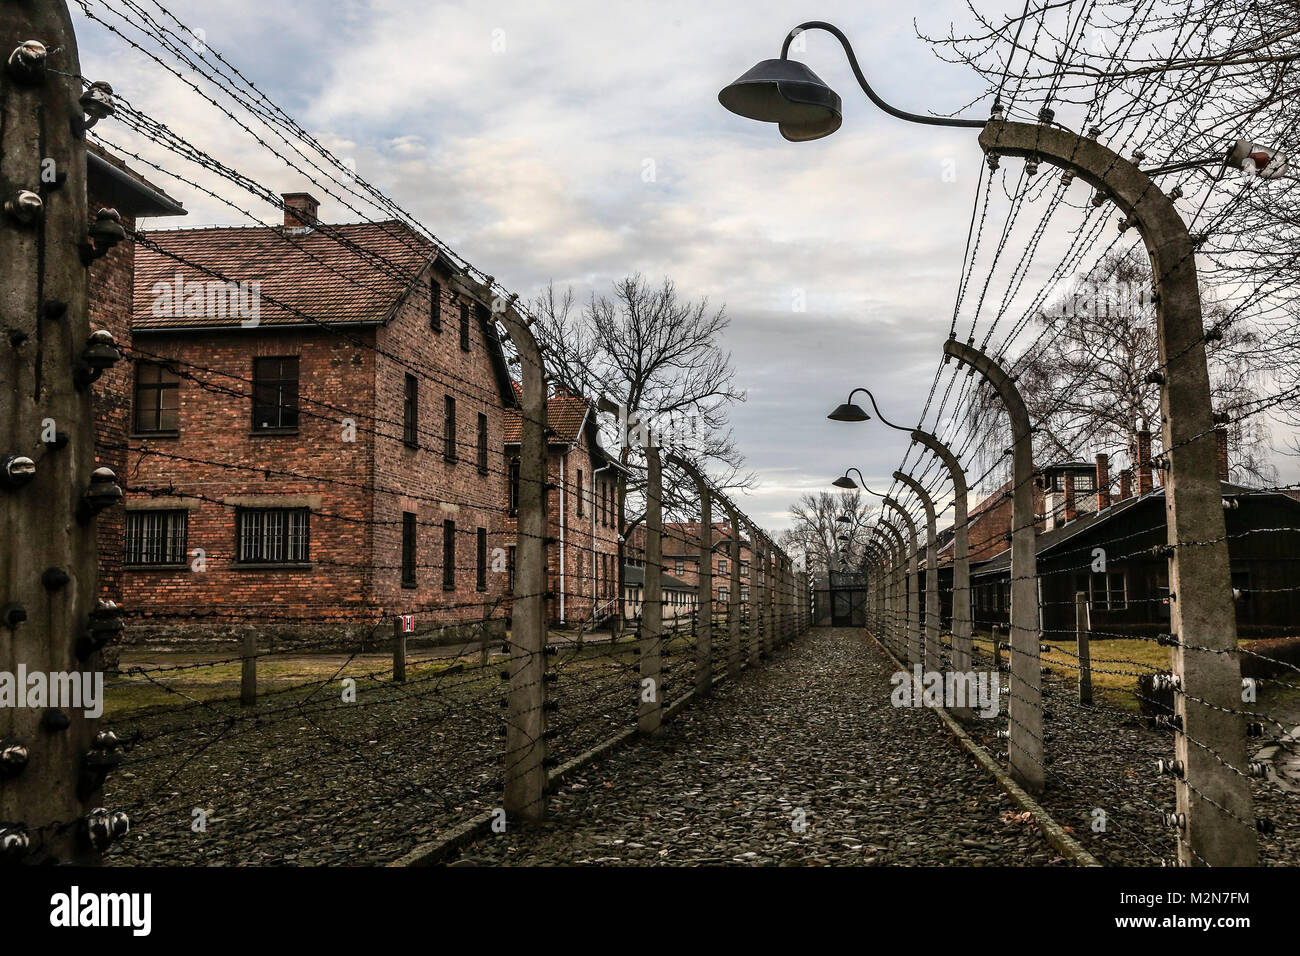 OSWIECIM, Polen - 27. JANUAR 2016: Der deutsche Nazi Konzentrations- und Vernichtungslager Auschwitz. Ehemalige Häftlinge besuchen Auschwitz ICH. Stockfoto